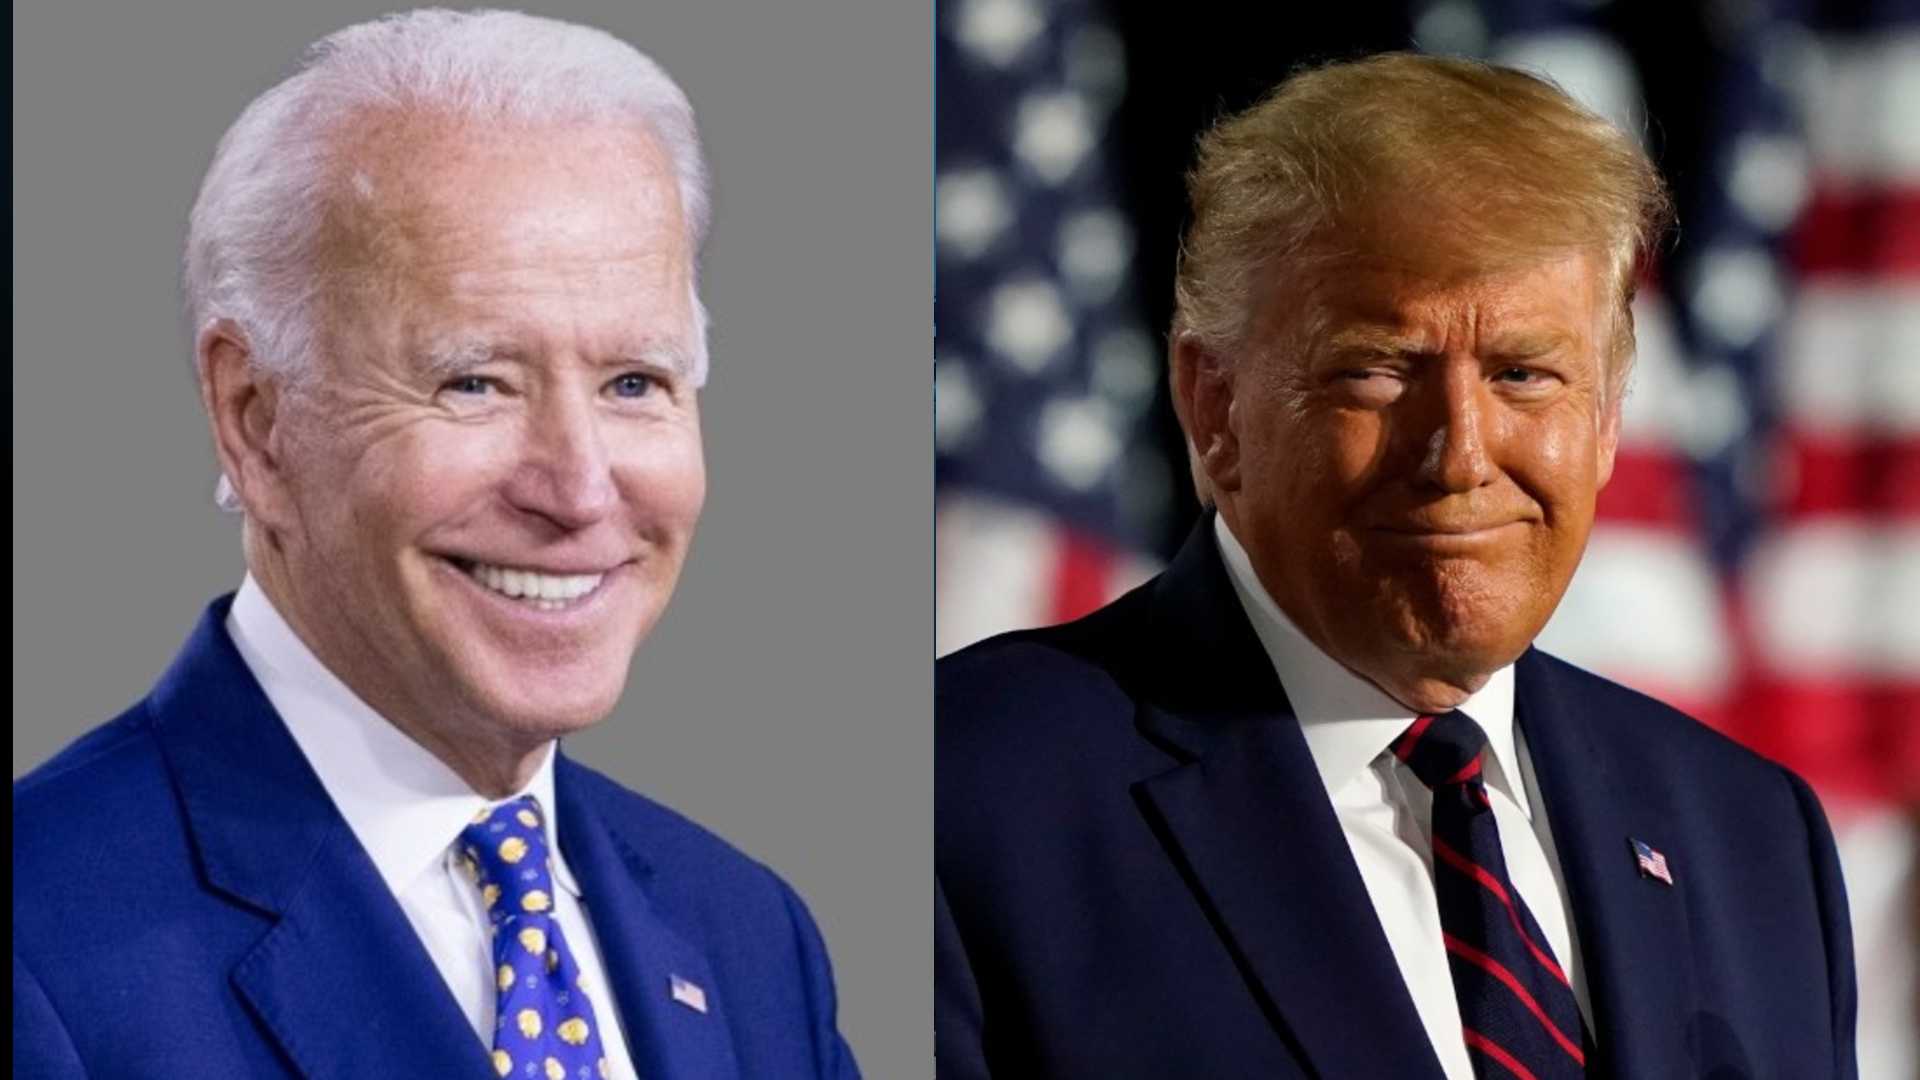 Will it be Biden or Trump in Iowa in 2020?